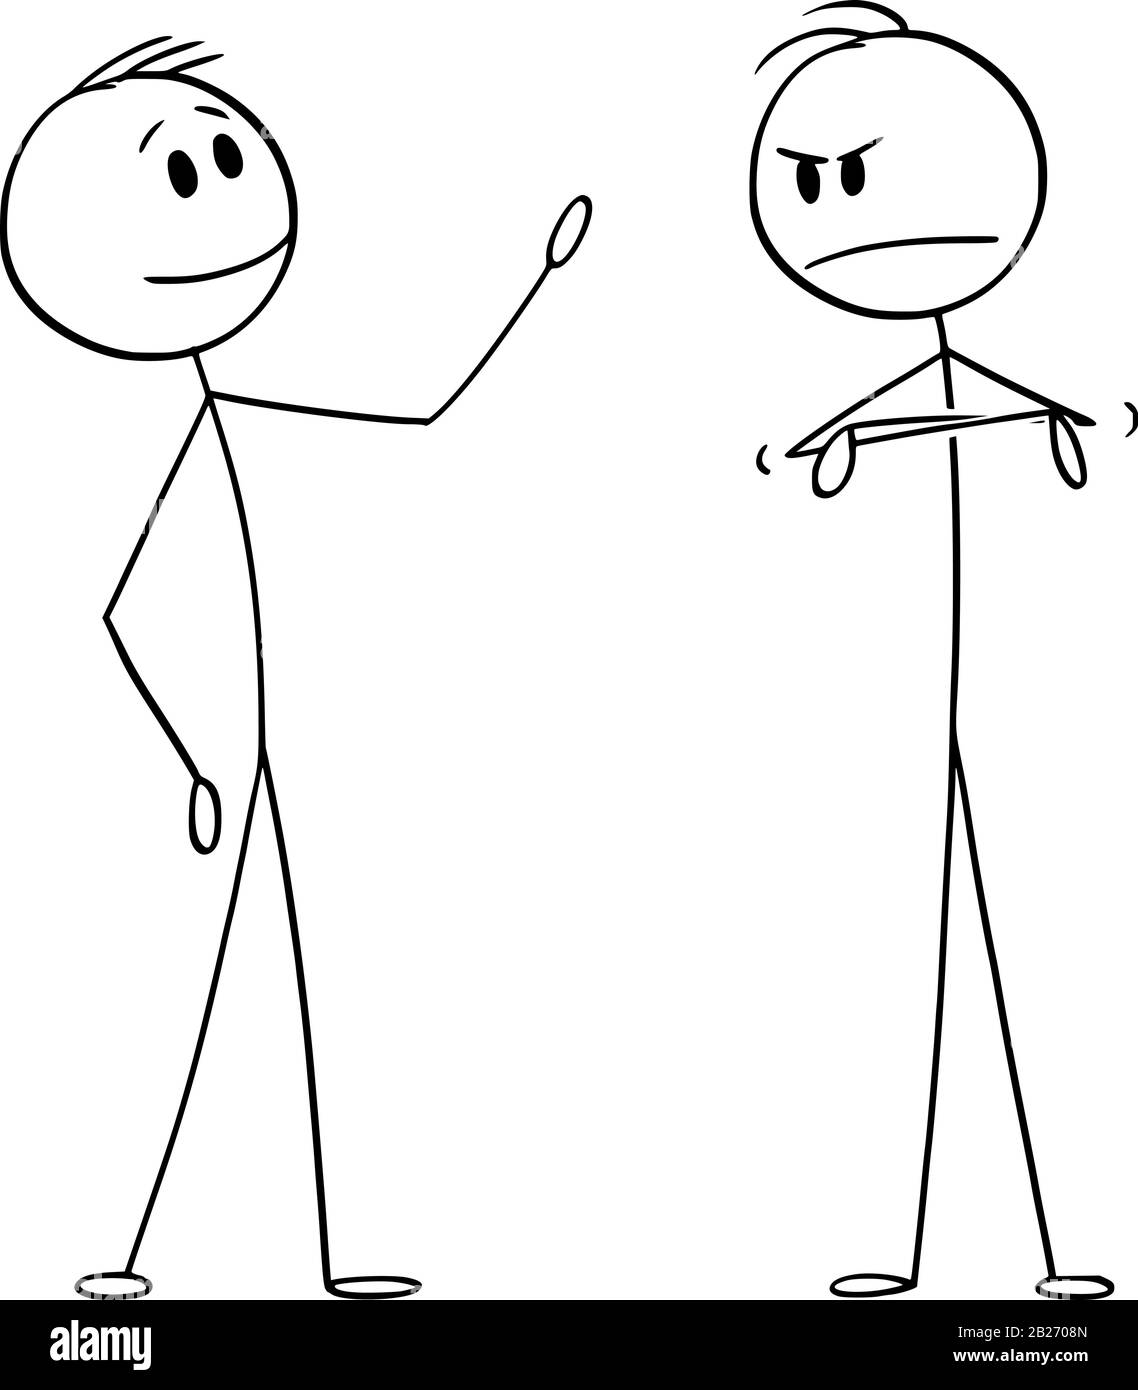 Vector Cartoon Stick Figur Zeichnung konzeptionelle Illustration von zwei Männern oder Geschäftsleuten sprechen oder Gespräch führen, eine ist positiv und zweite negativ. Stock Vektor